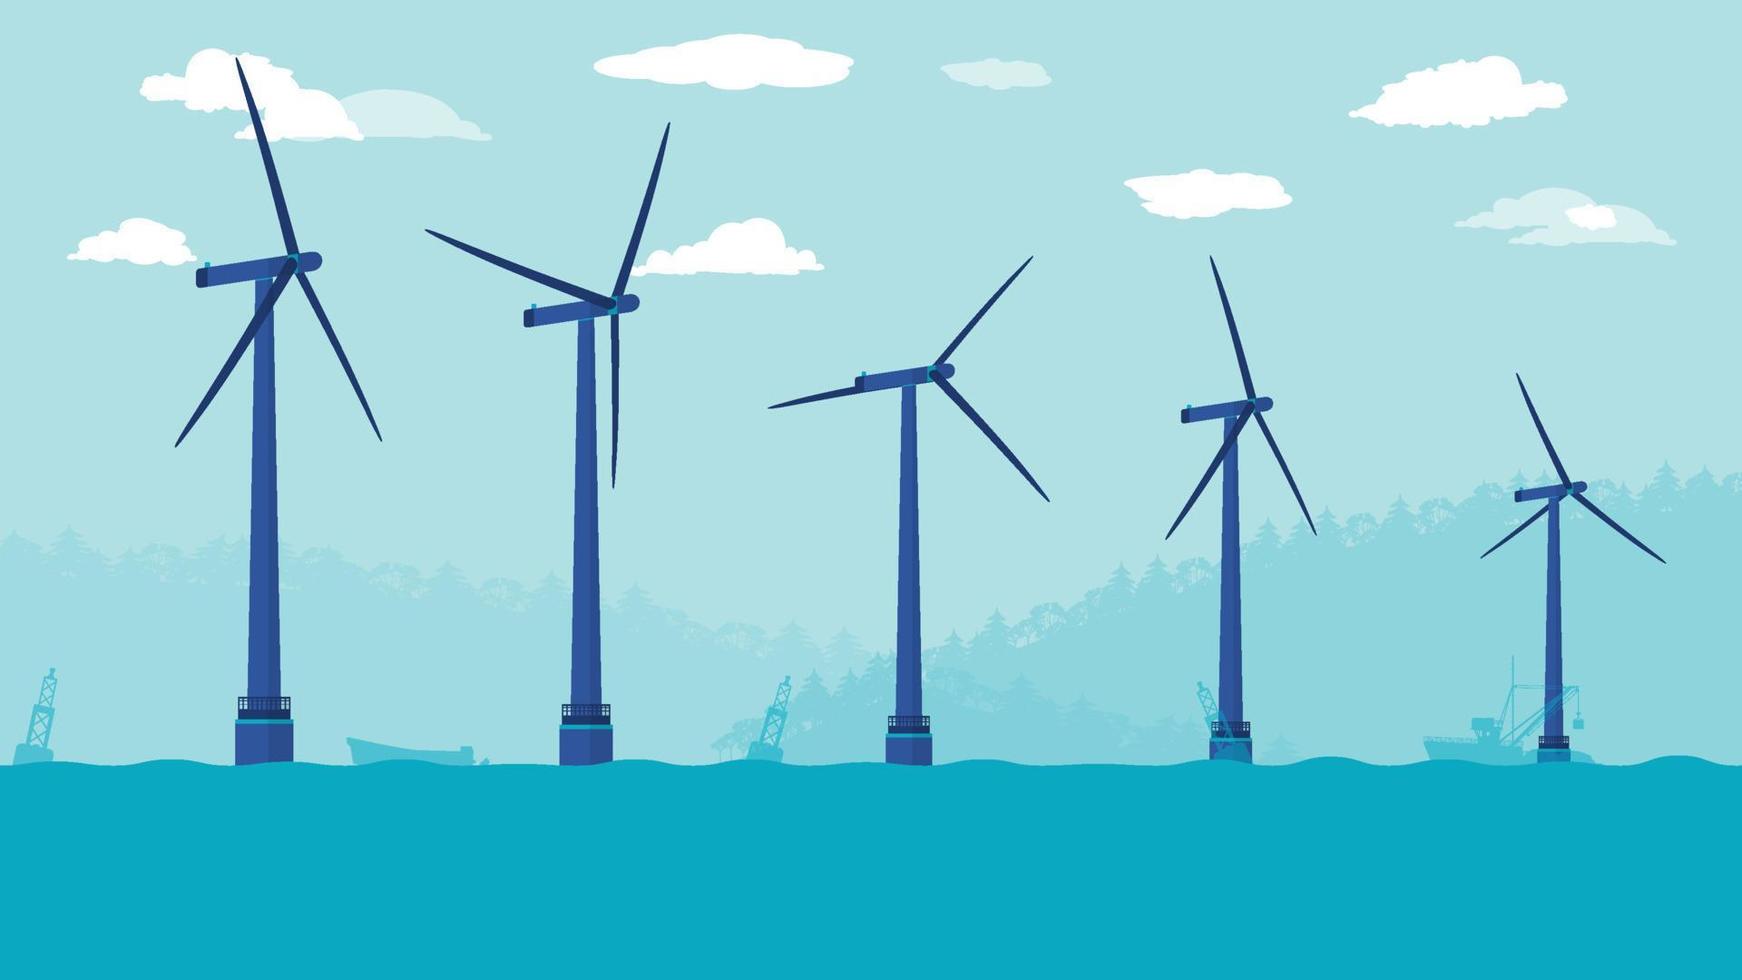 vista lateral plana de dibujos animados de la granja de turbinas eólicas en alta mar en el océano o el mar vector